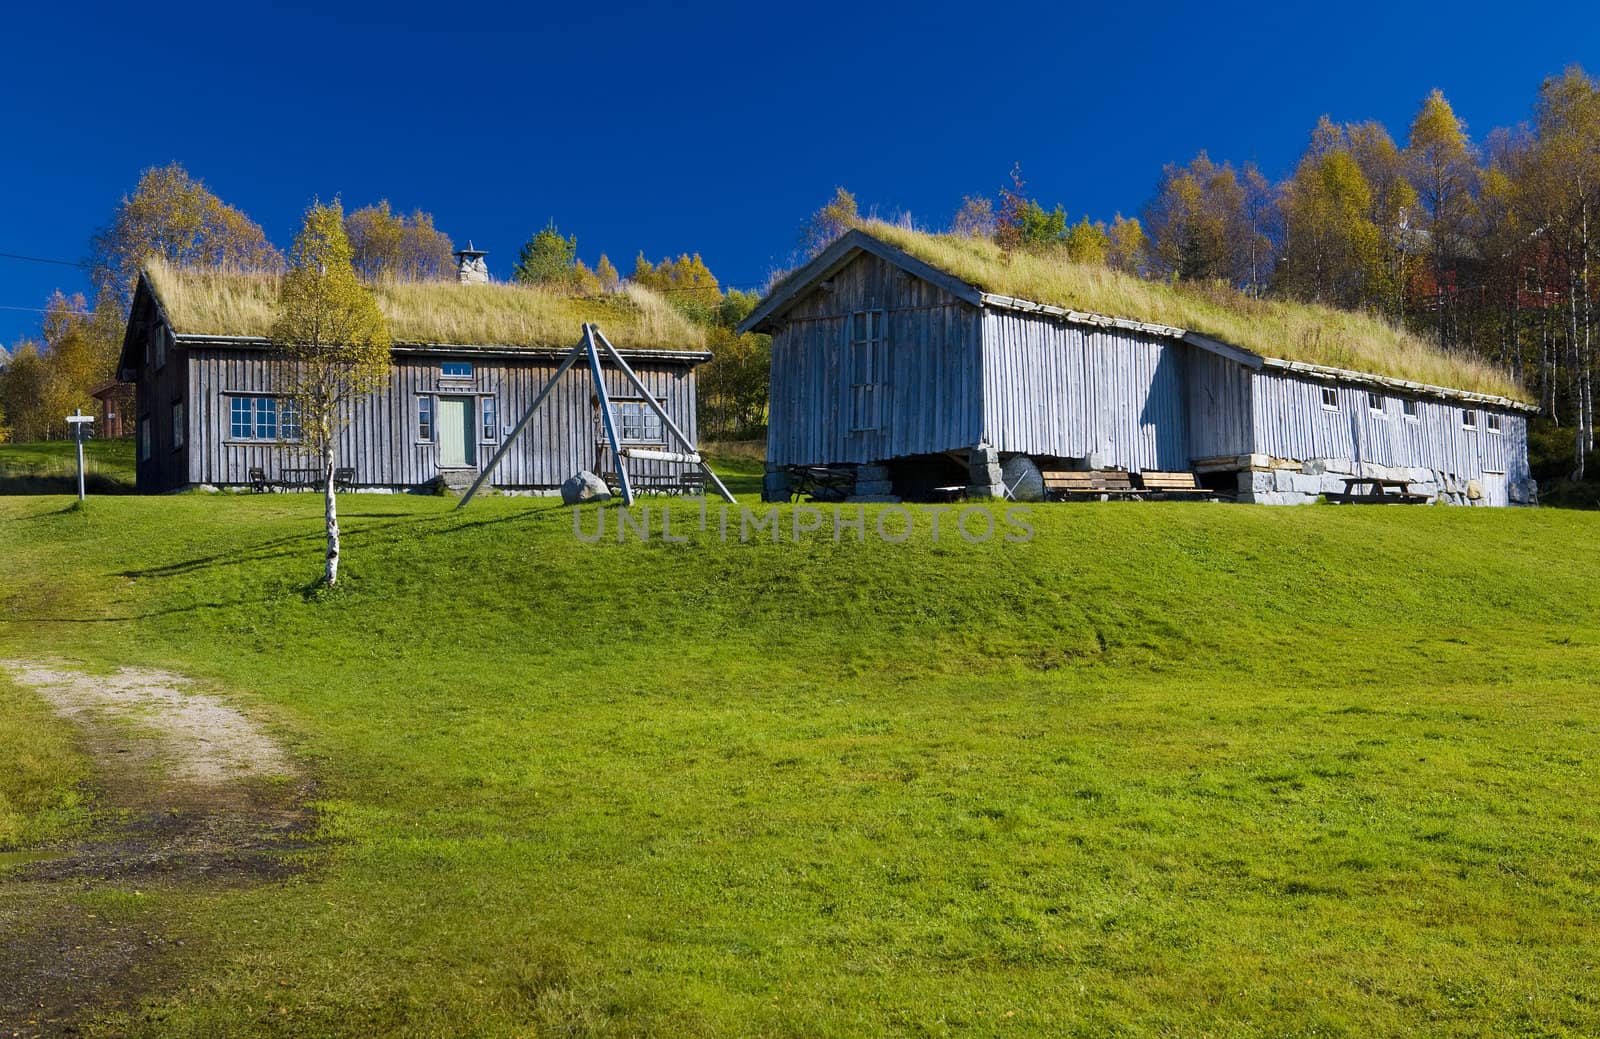 Kvaevemoen, Norway by phbcz